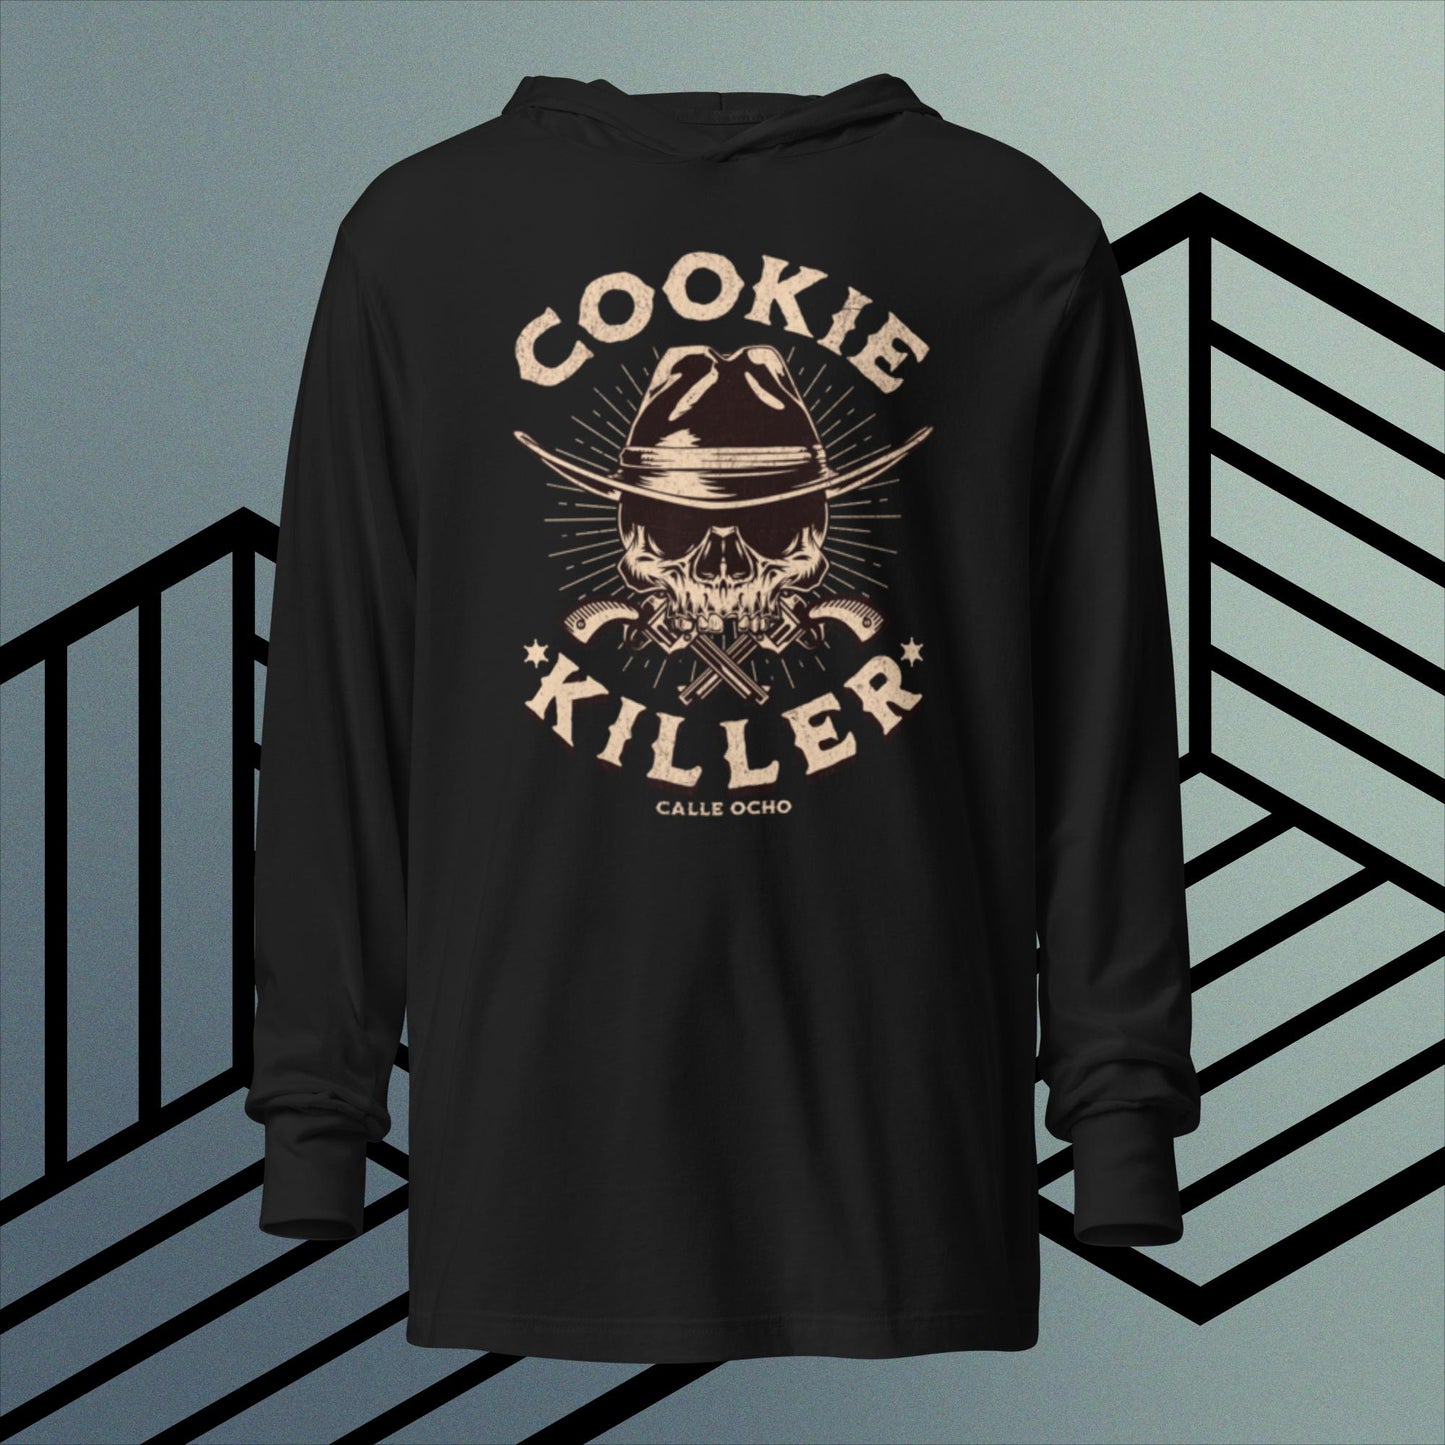 Cookie killer hooded T